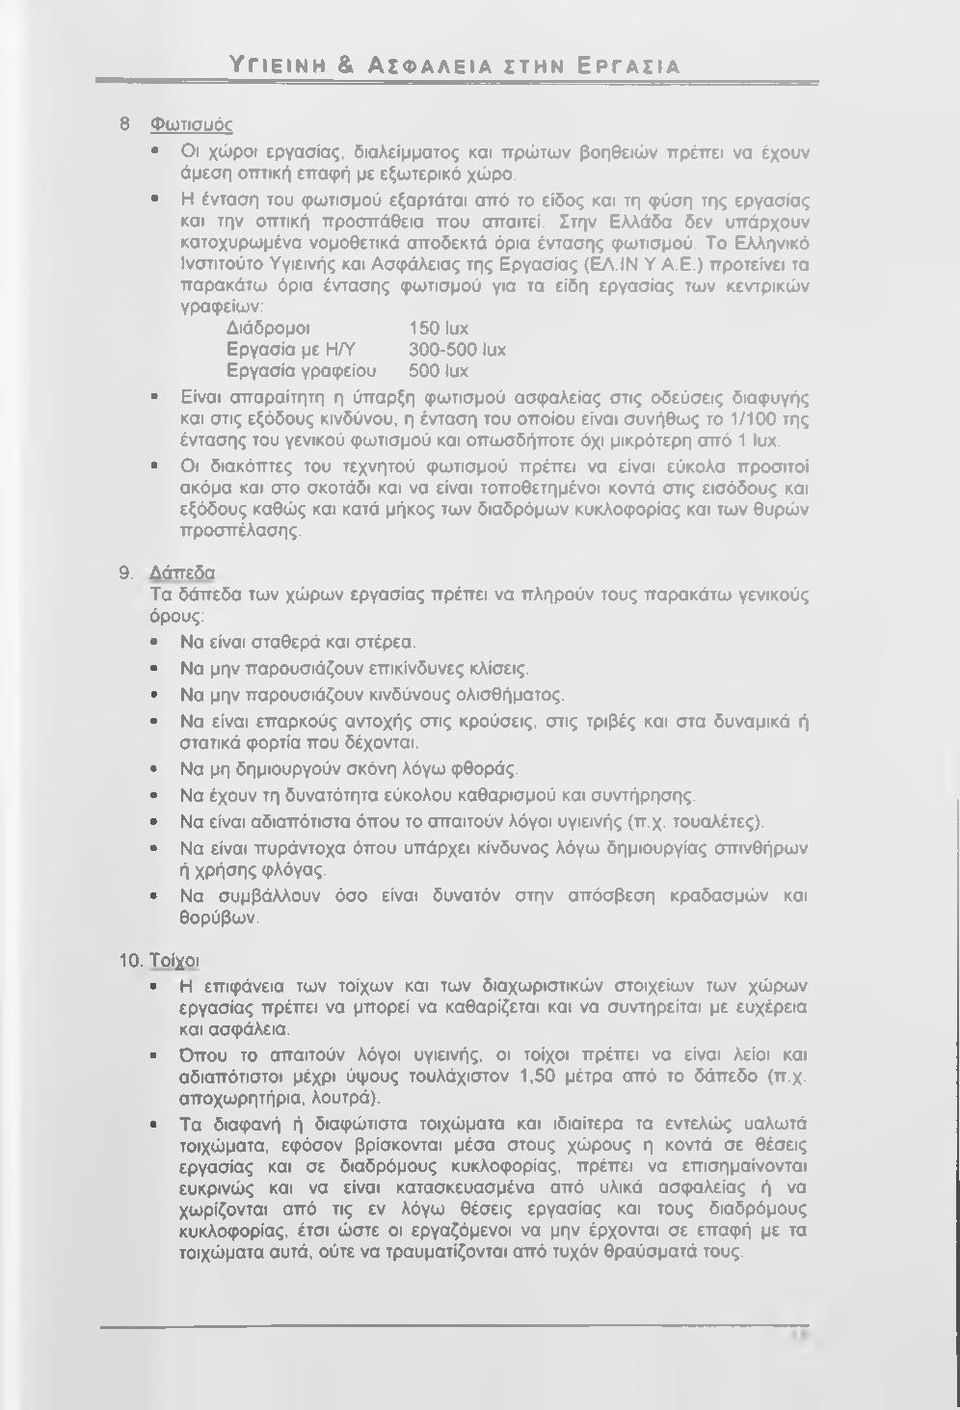 Το Ελληνικό Ινστιτούτο Υγιεινής και Ασφάλειας της Εργασίας (ΕΛ.ΙΝ Υ Α.Ε.) προτείνει τα παρακάτω όρια έντασης φωτισμού για τα είδη εργασίας των κεντρικών γραφείων: Διάδρομοι 150 Ιυχ Εργασία με Η/Υ